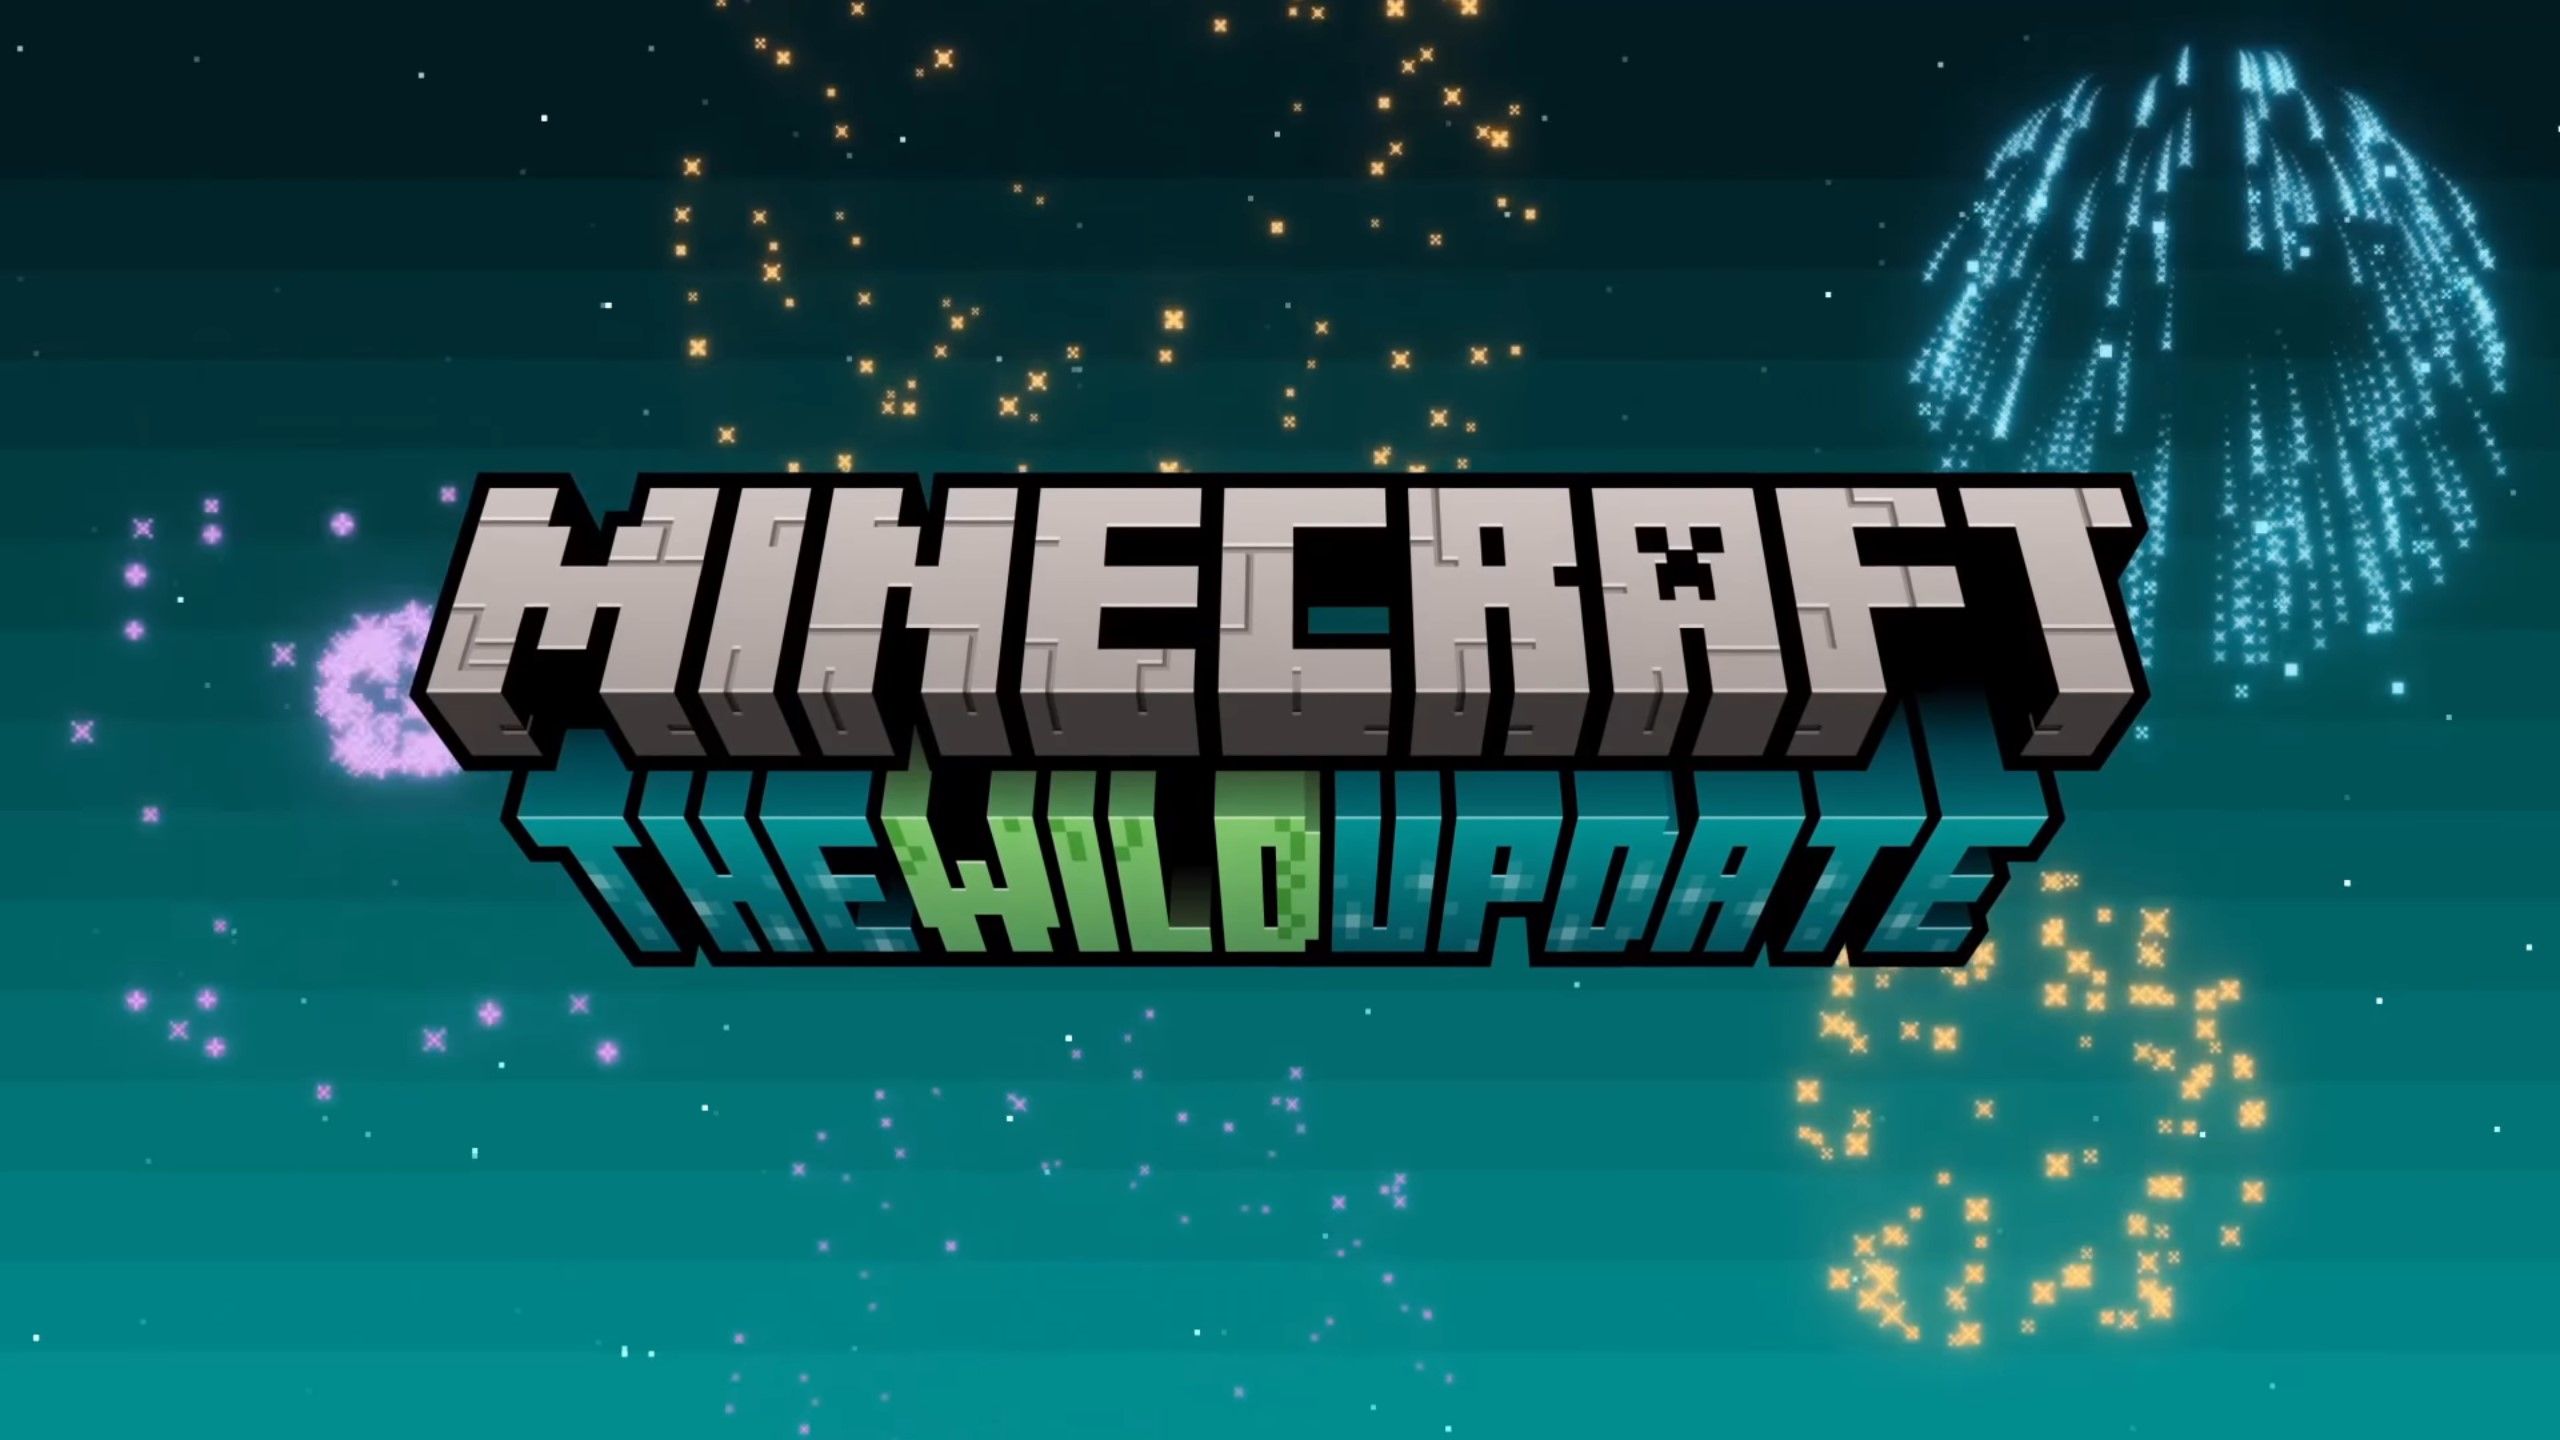 minecraft 1.19 update